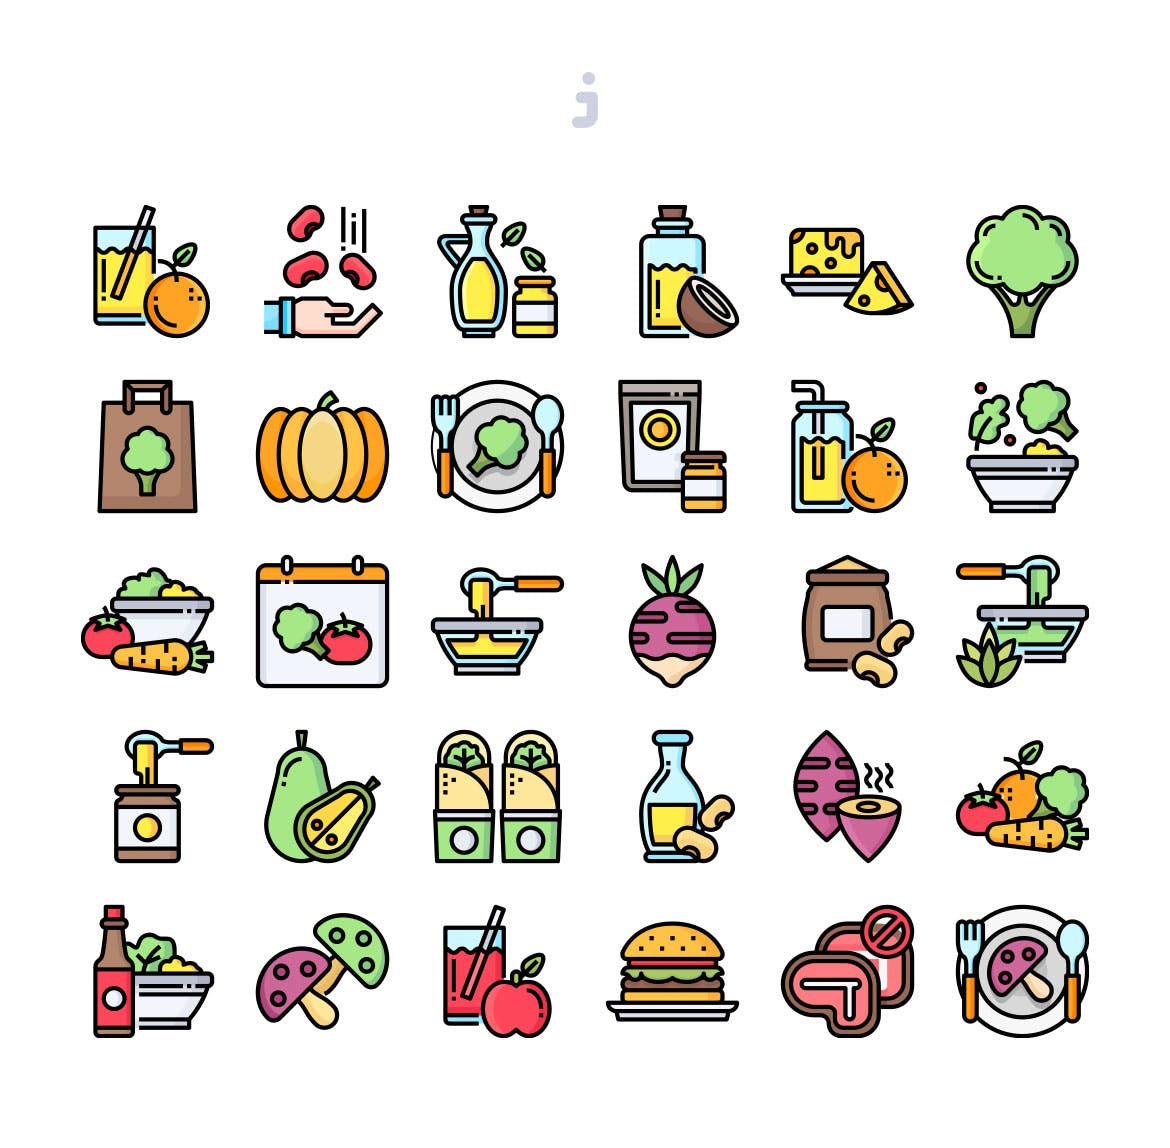 30枚素食主义主题矢量图标 30 Vegan Food Icons插图(1)